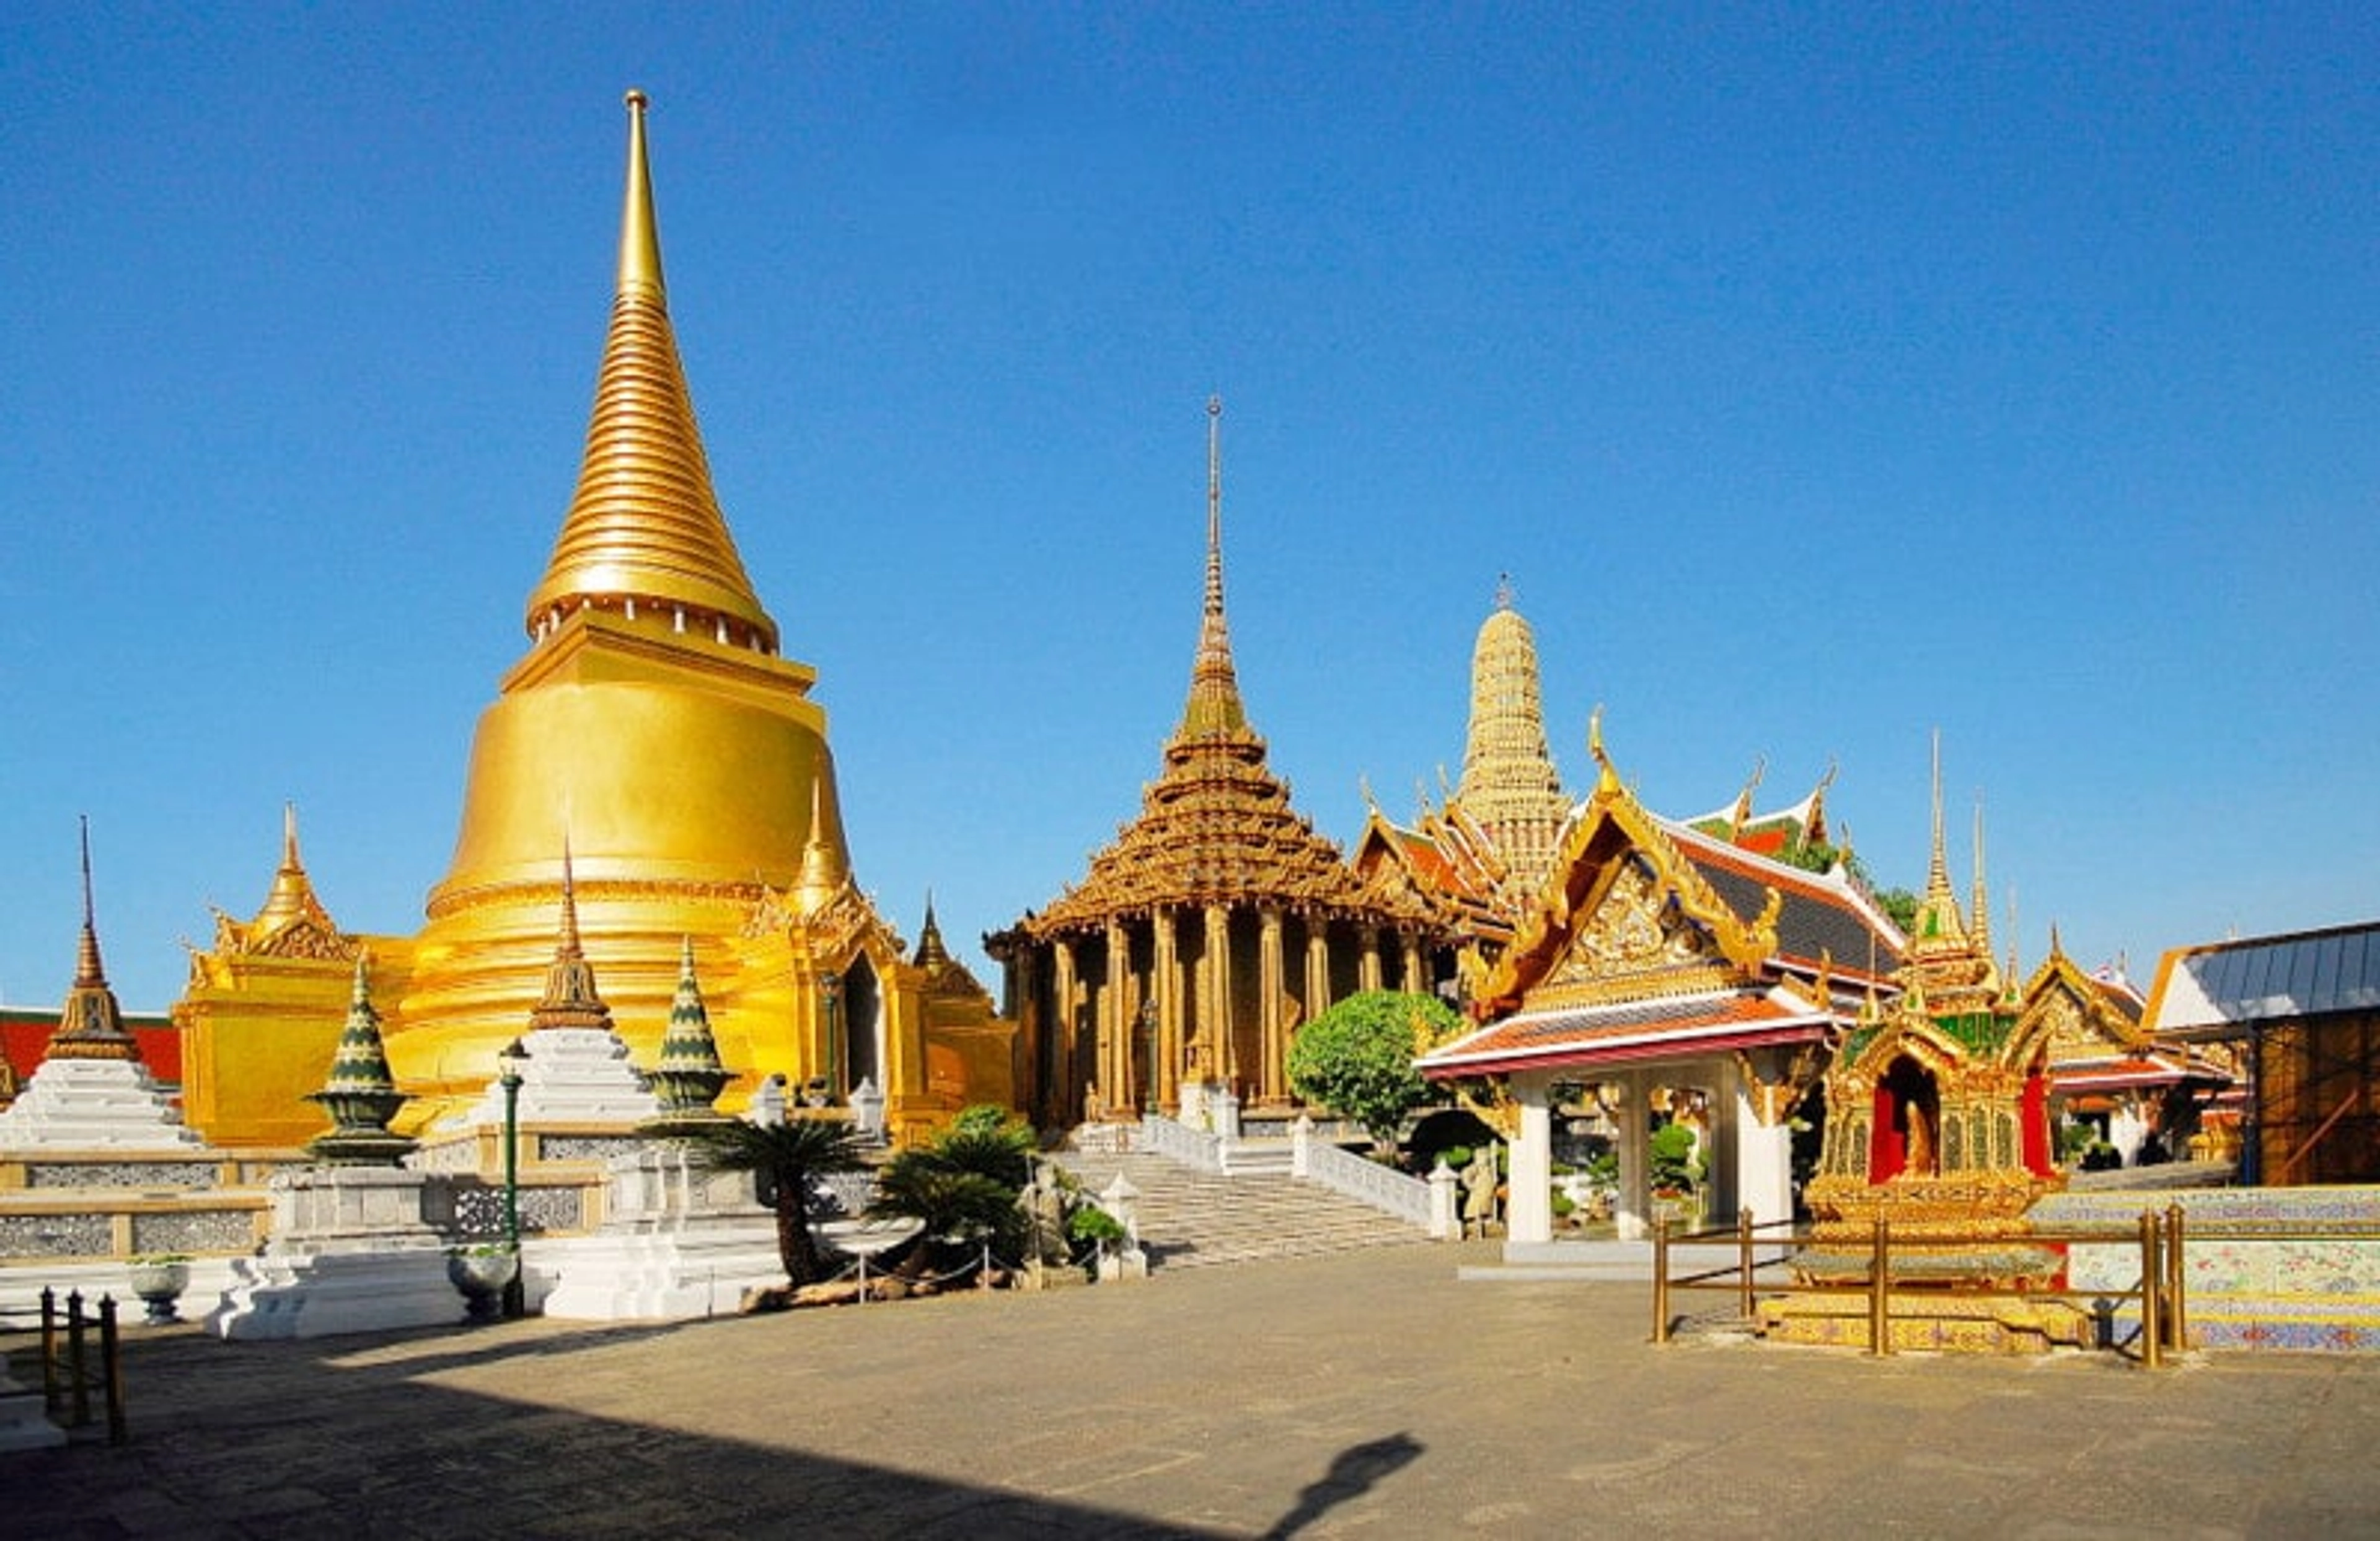 Tham quan công viên thu nhỏ nổi tiếng Mini Siam tại Pattaya,Thái Lan